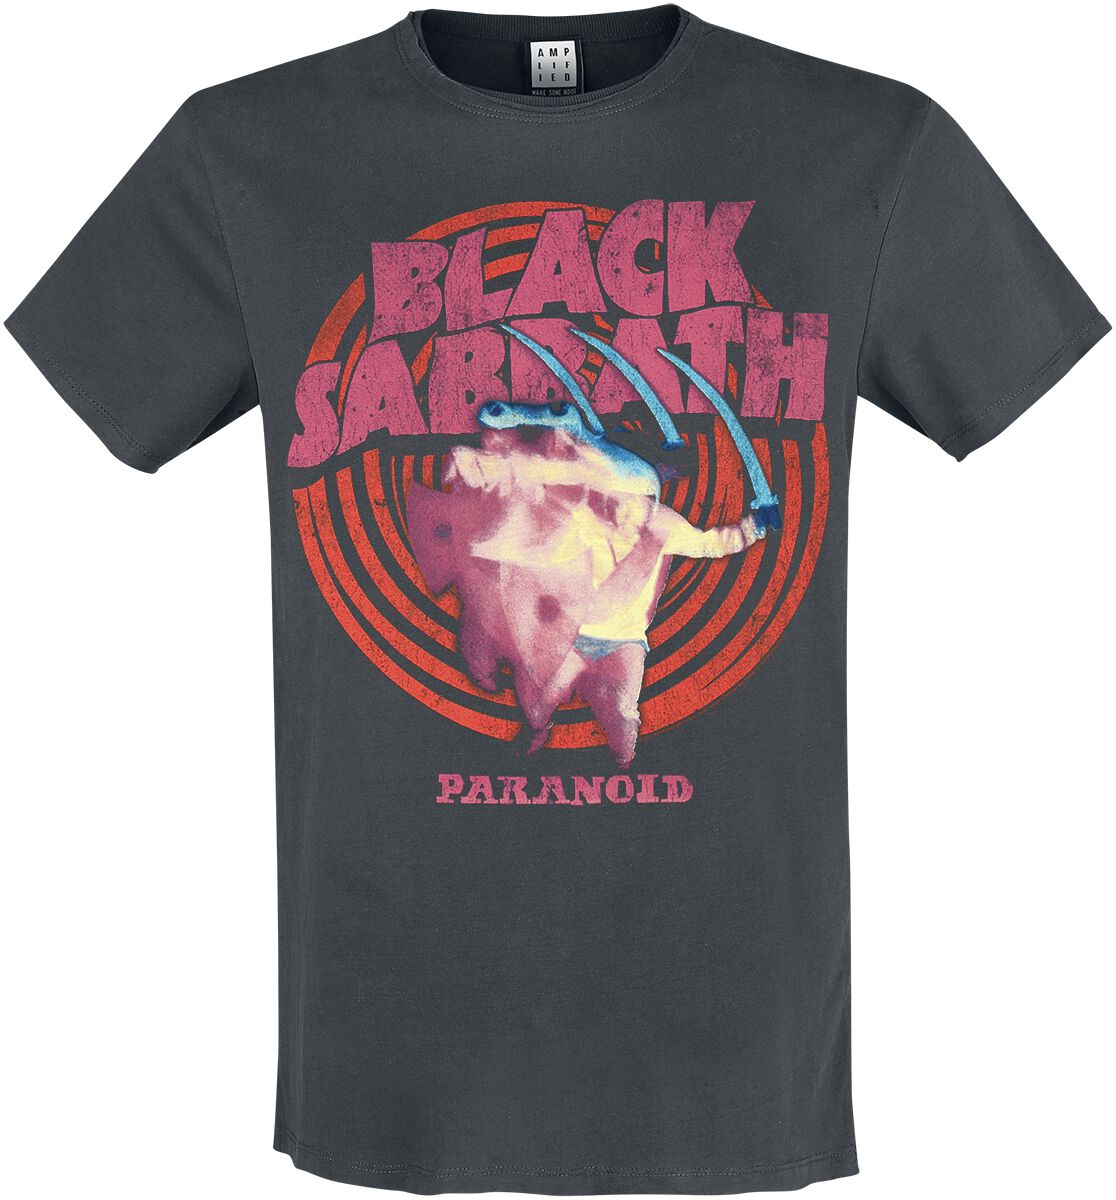 Black Sabbath T-Shirt - Amplified Collection - Paranoid - S bis 3XL - für Männer - Größe 3XL - charcoal  - Lizenziertes Merchandise!